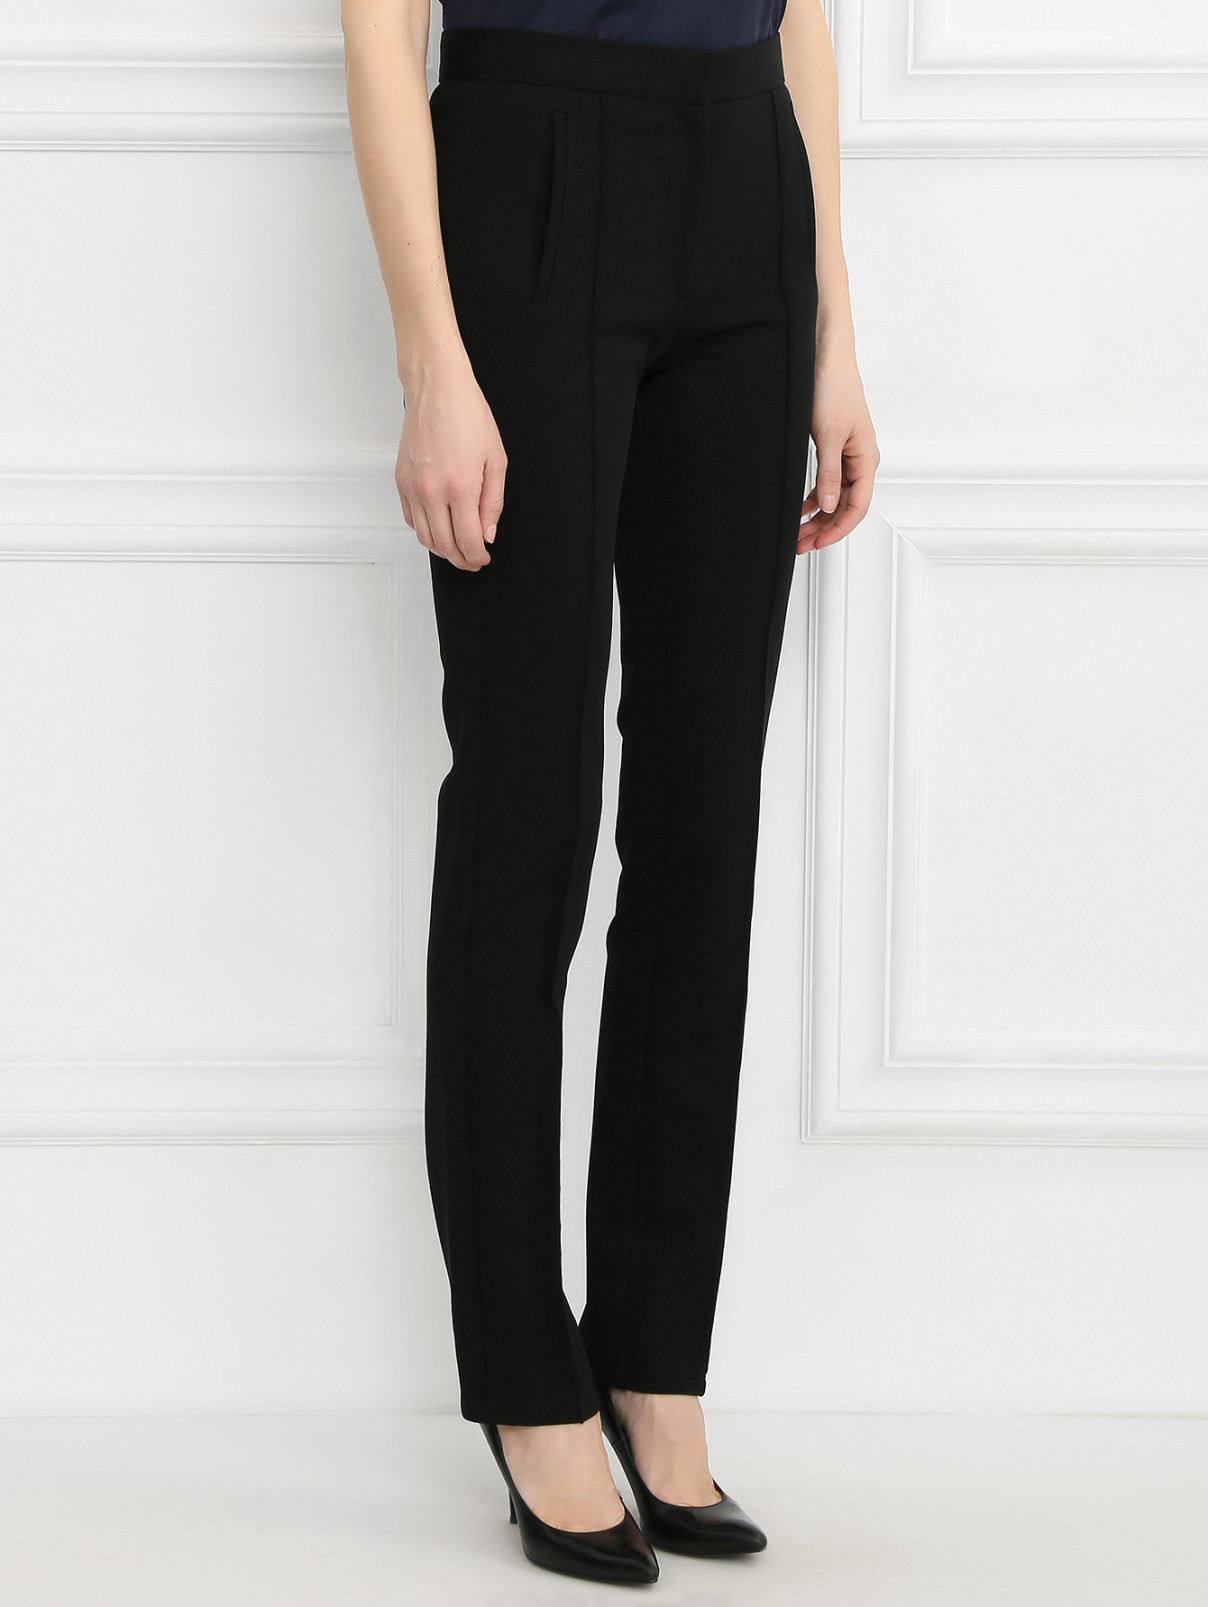 Узкие брюки Viktor&Rolf  –  Модель Верх-Низ  – Цвет:  Черный